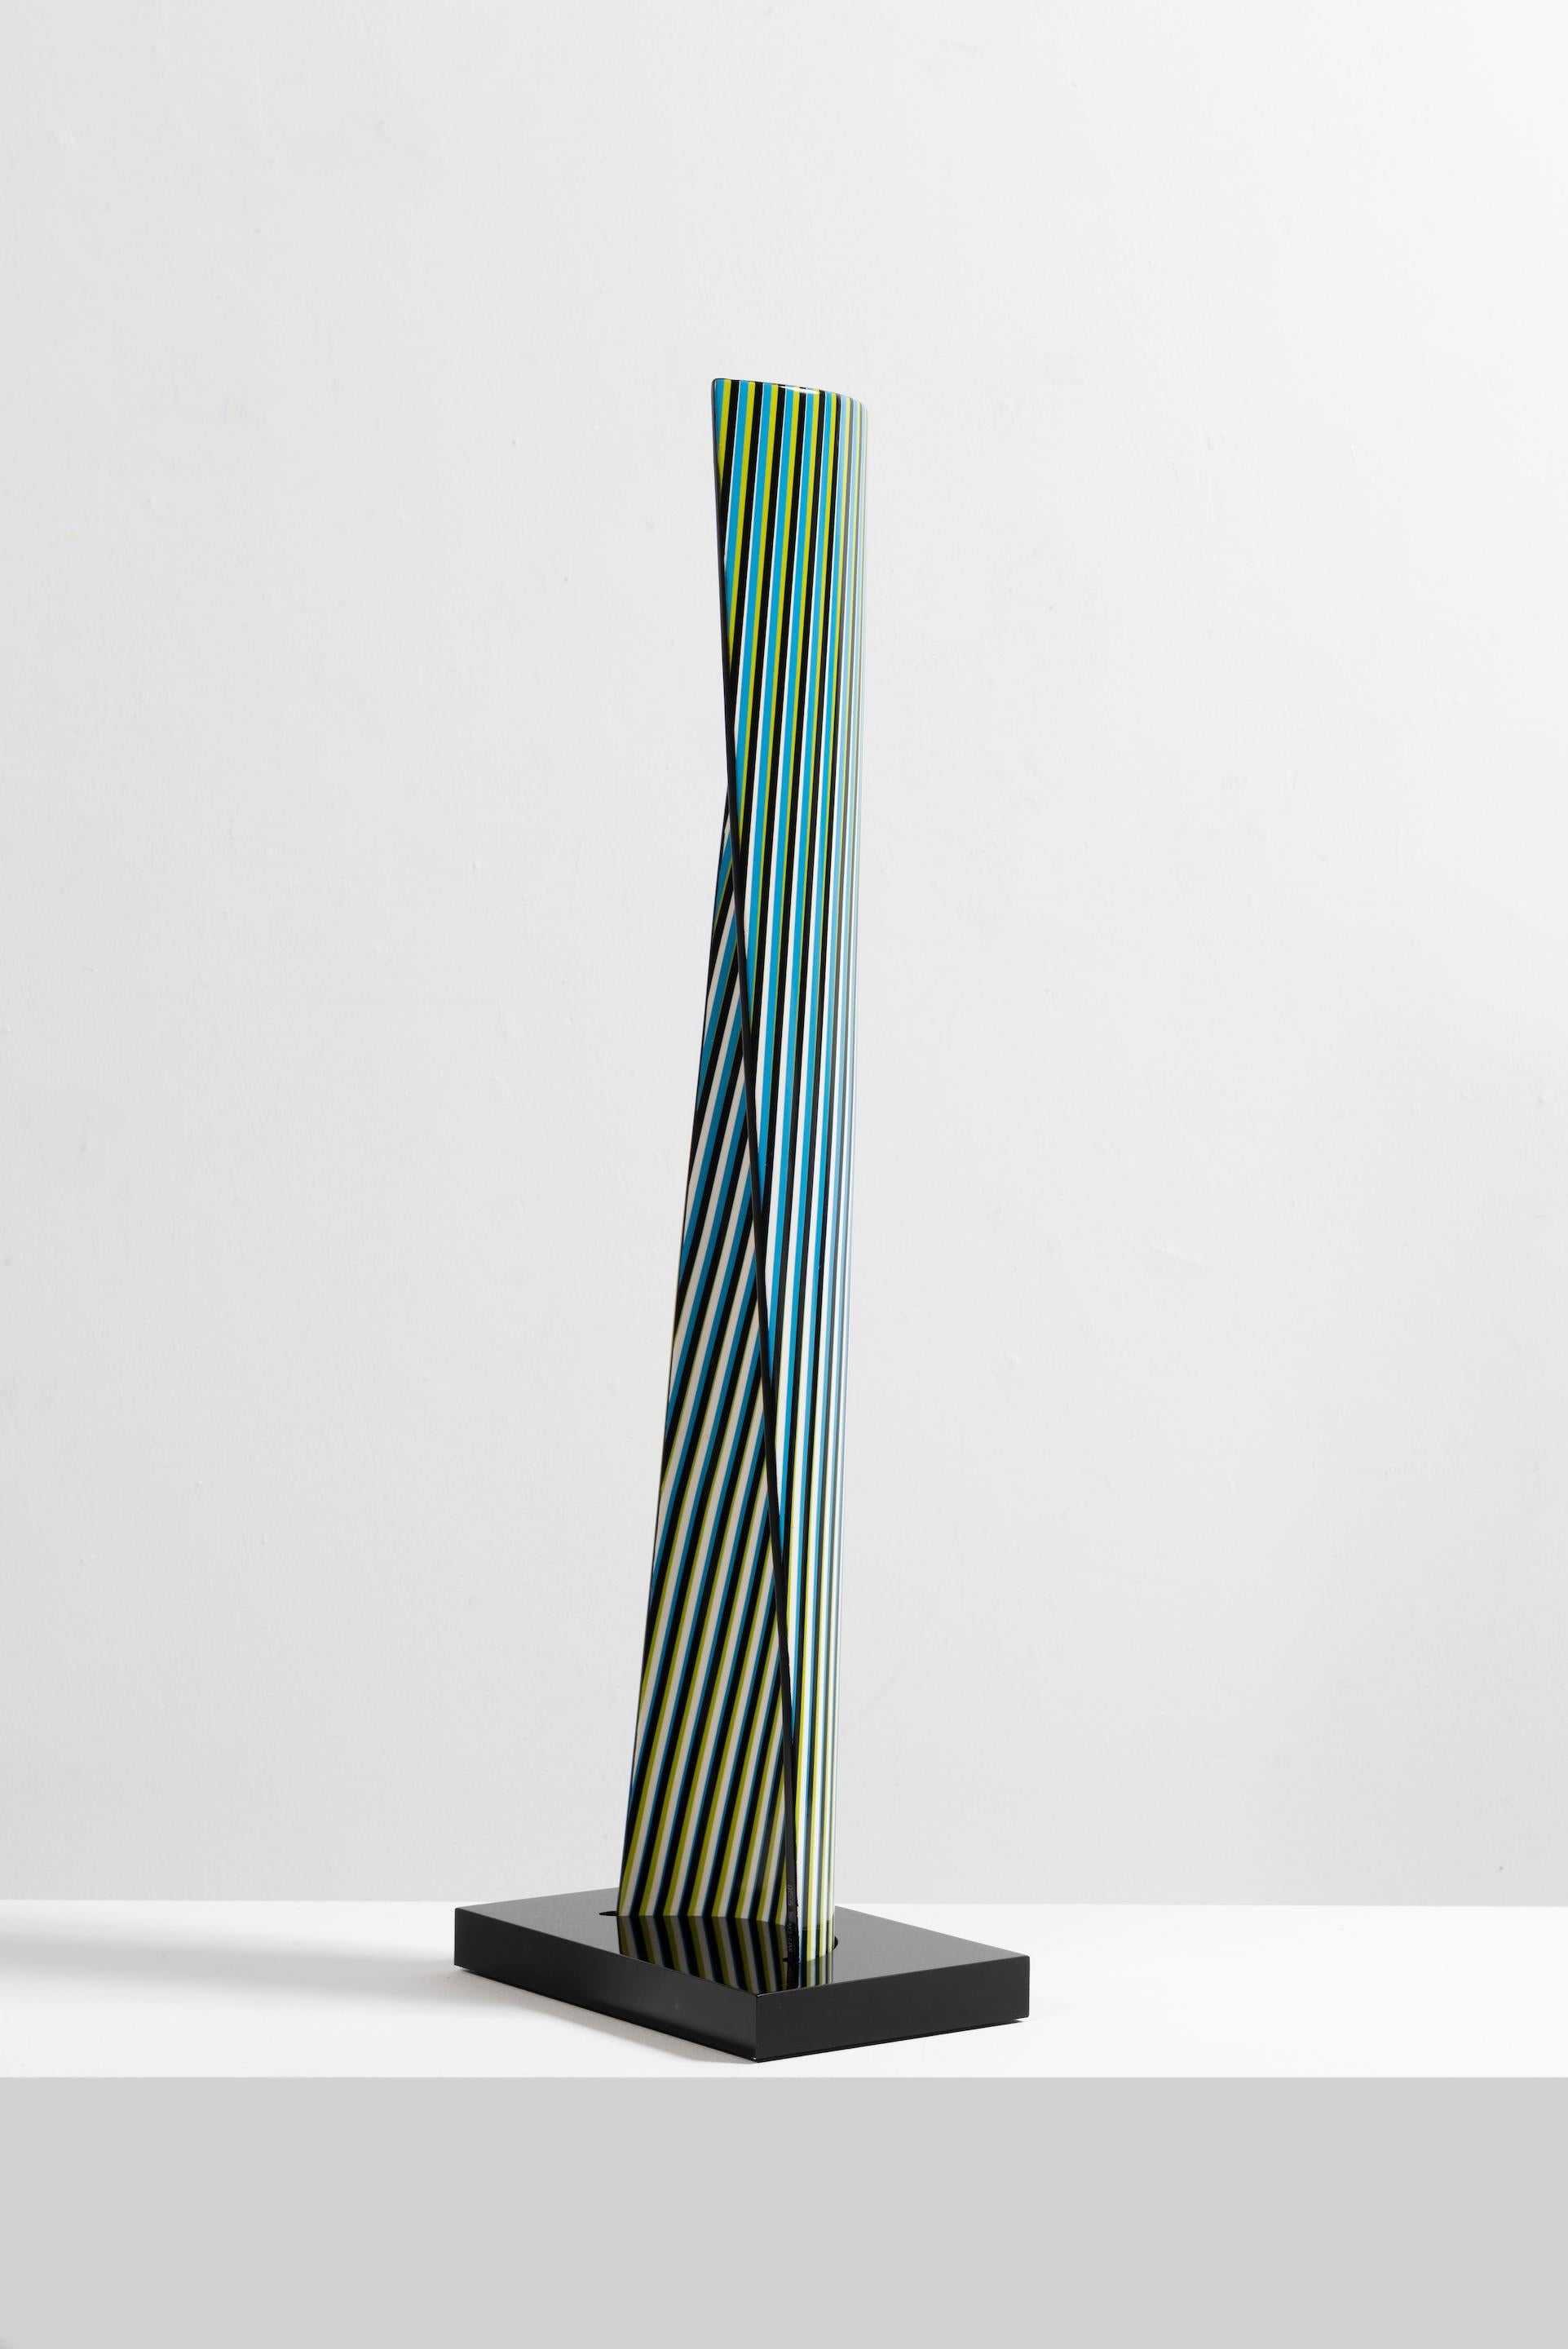 CARLOS CRUZ-DÍEZ - CROMOVELA 21. Skulptur in limitierter Auflage. Op Art, Modernität – Sculpture von Carlos Cruz-Diez